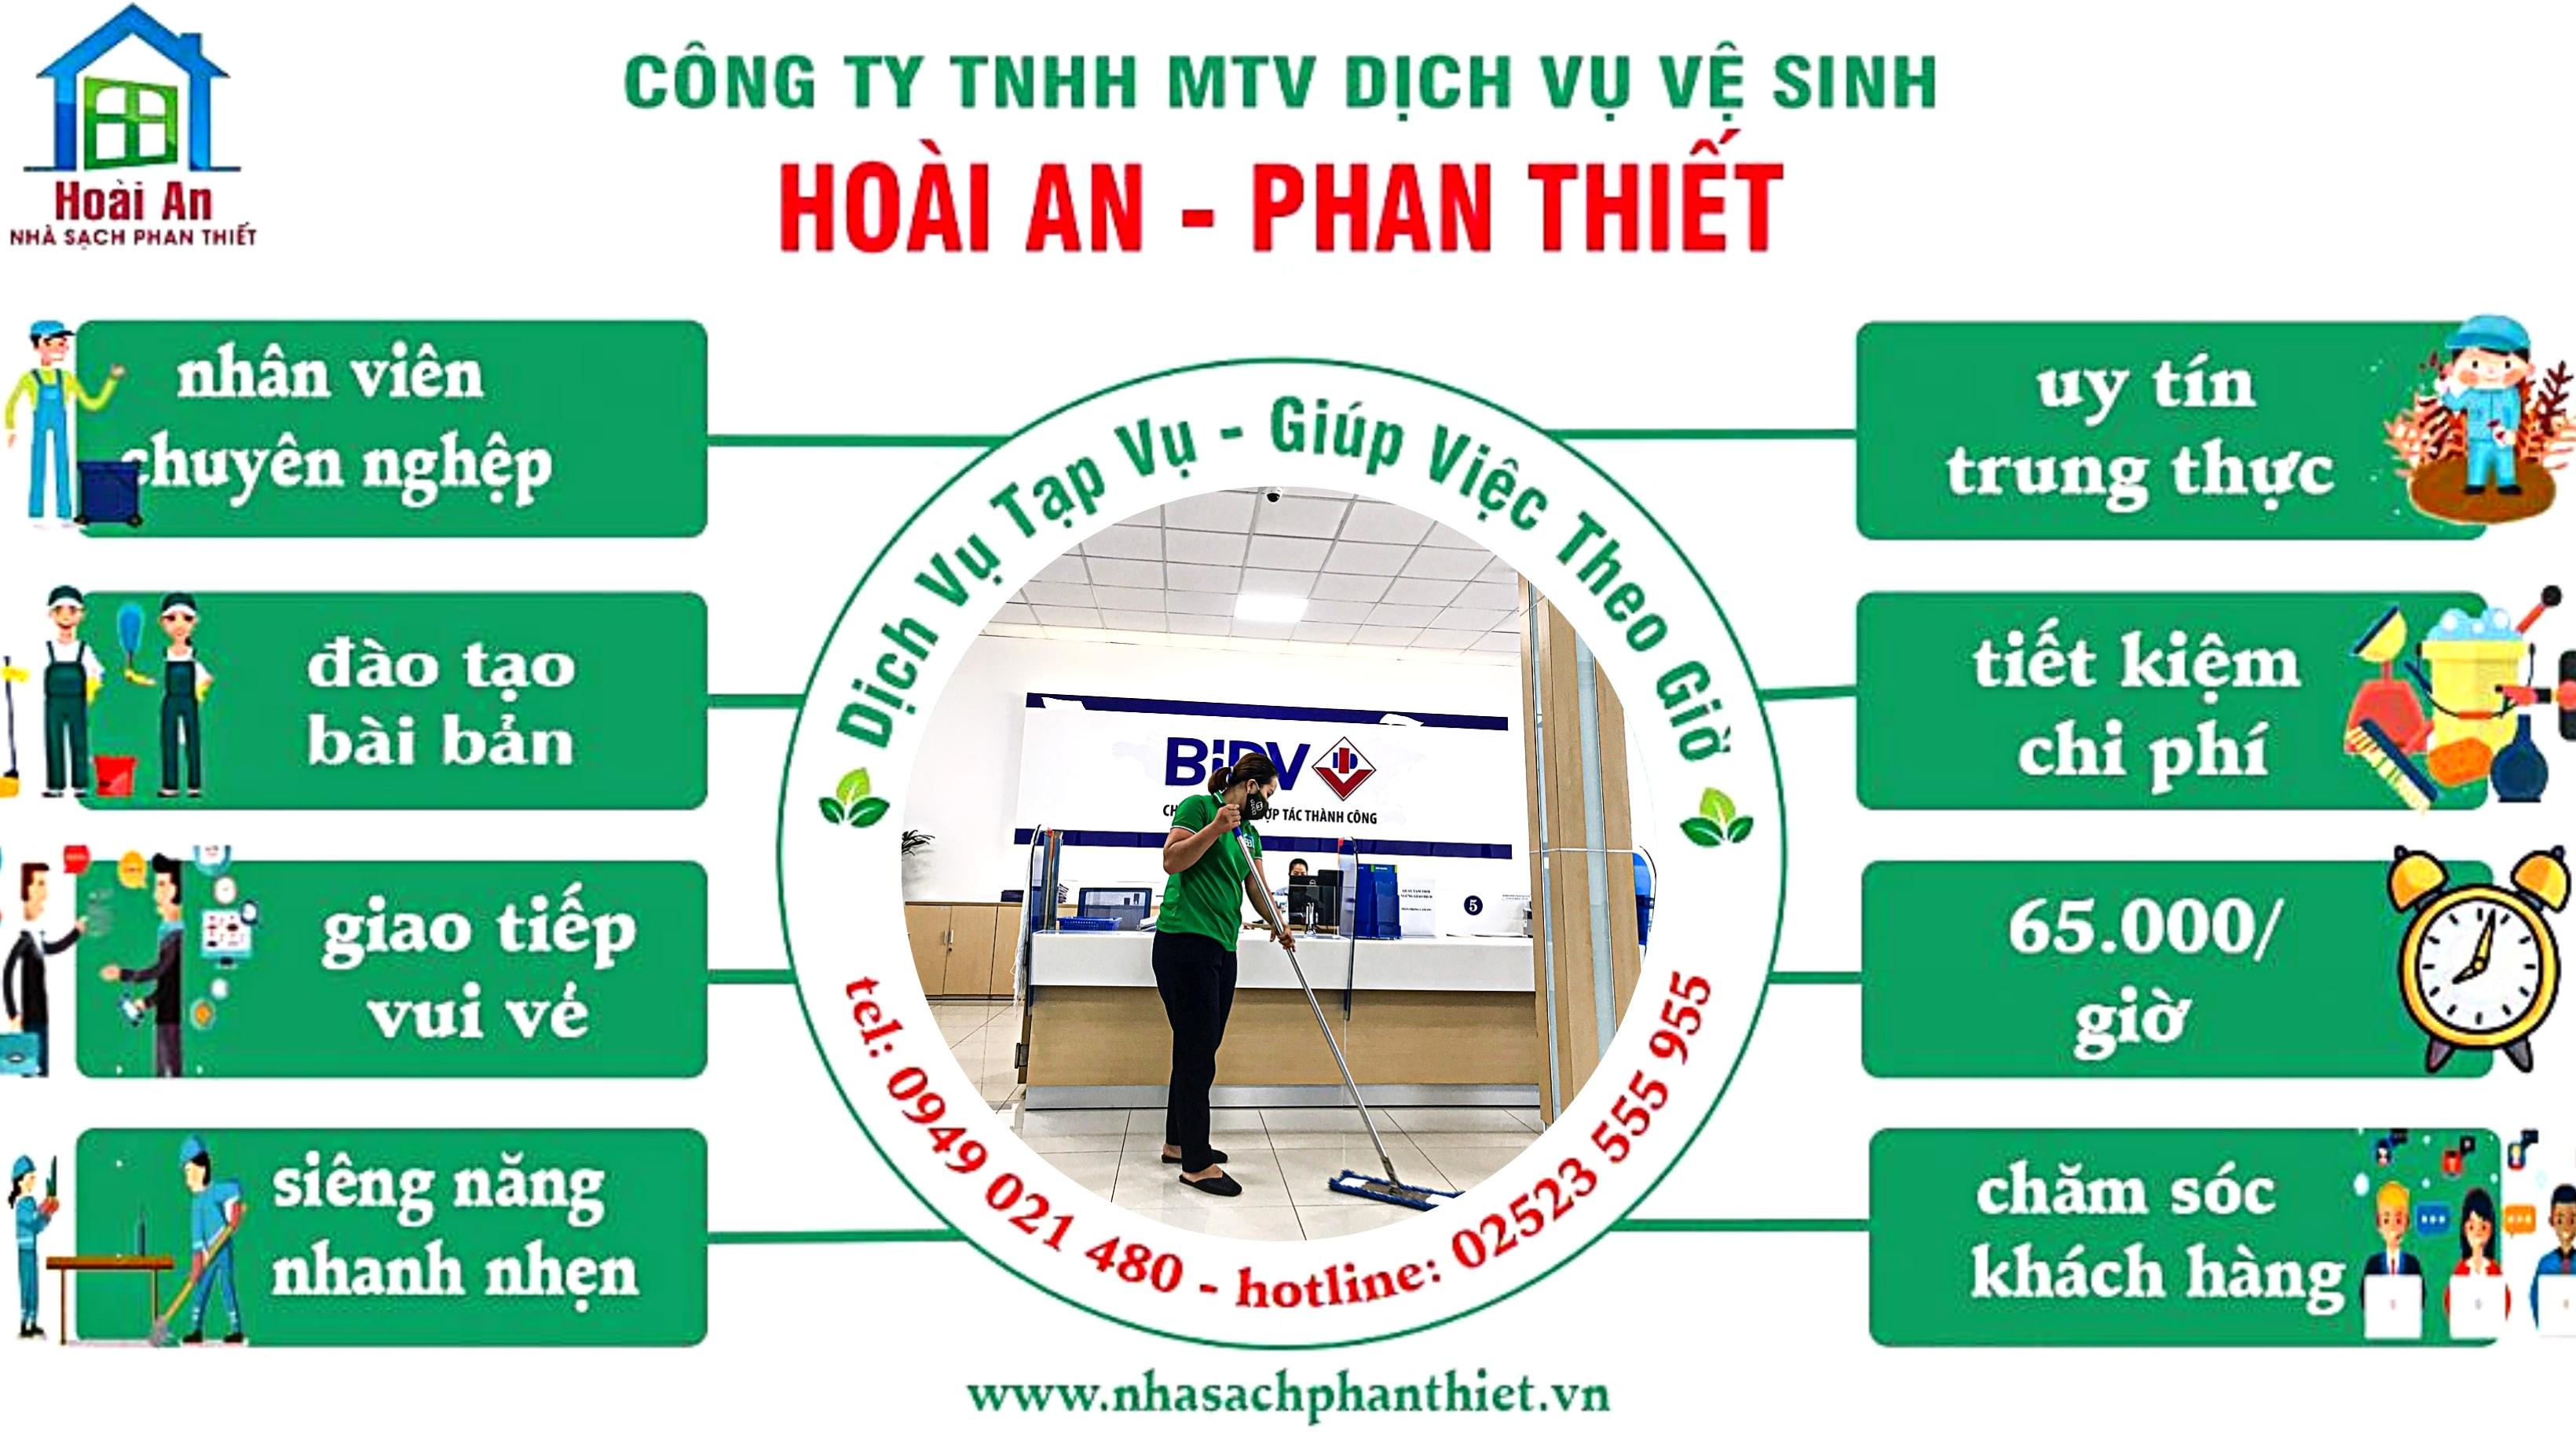 Tạp vụ - giúp việc theo giờ Nhà sạch Hoài An - Phan Thiêt